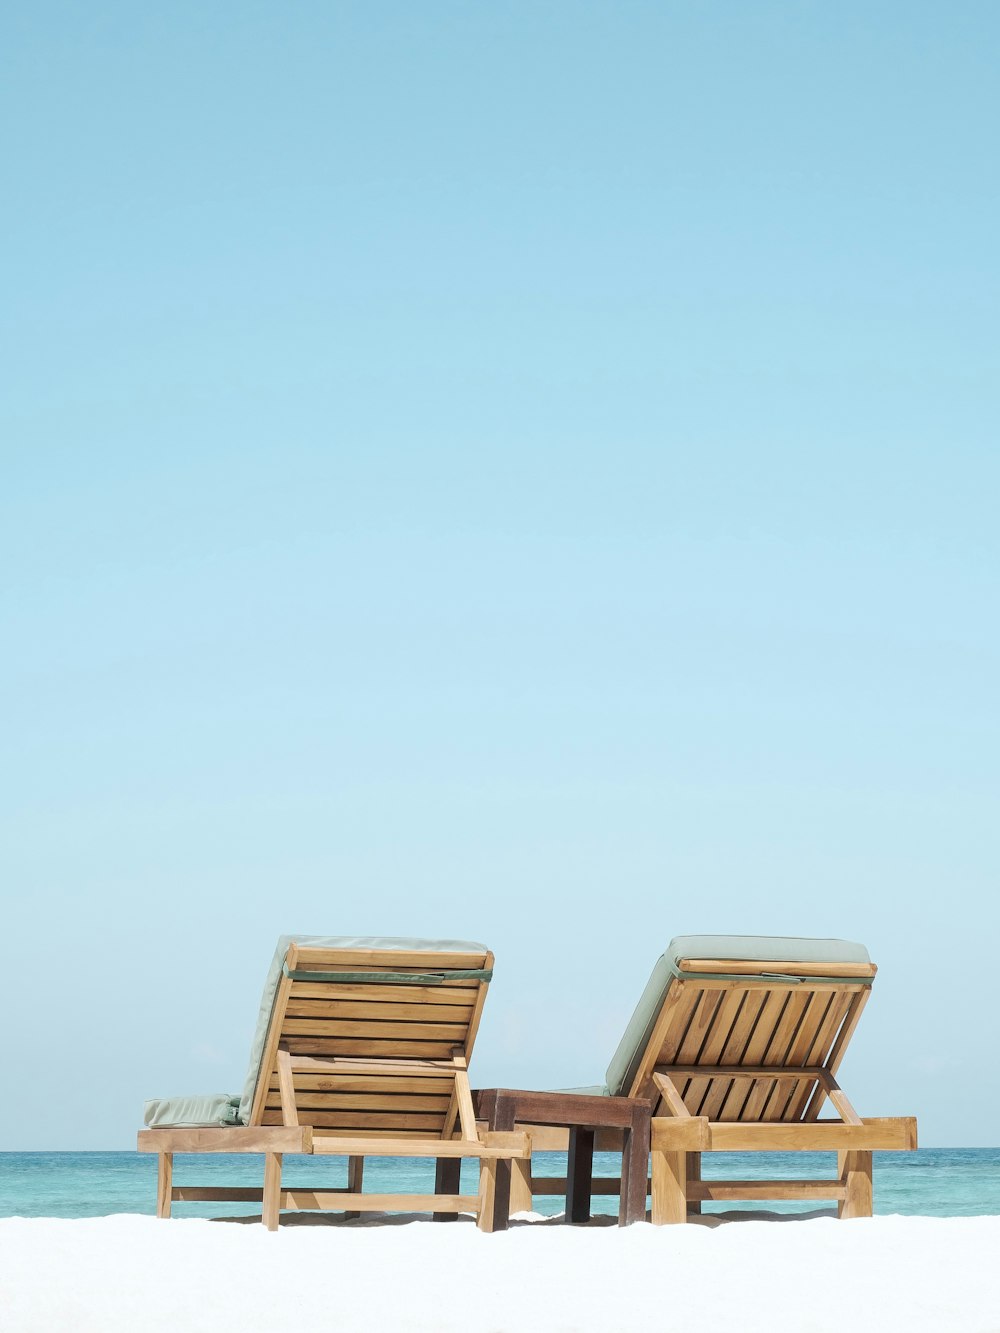 ビーチに茶色の木製の屋外長椅子2台